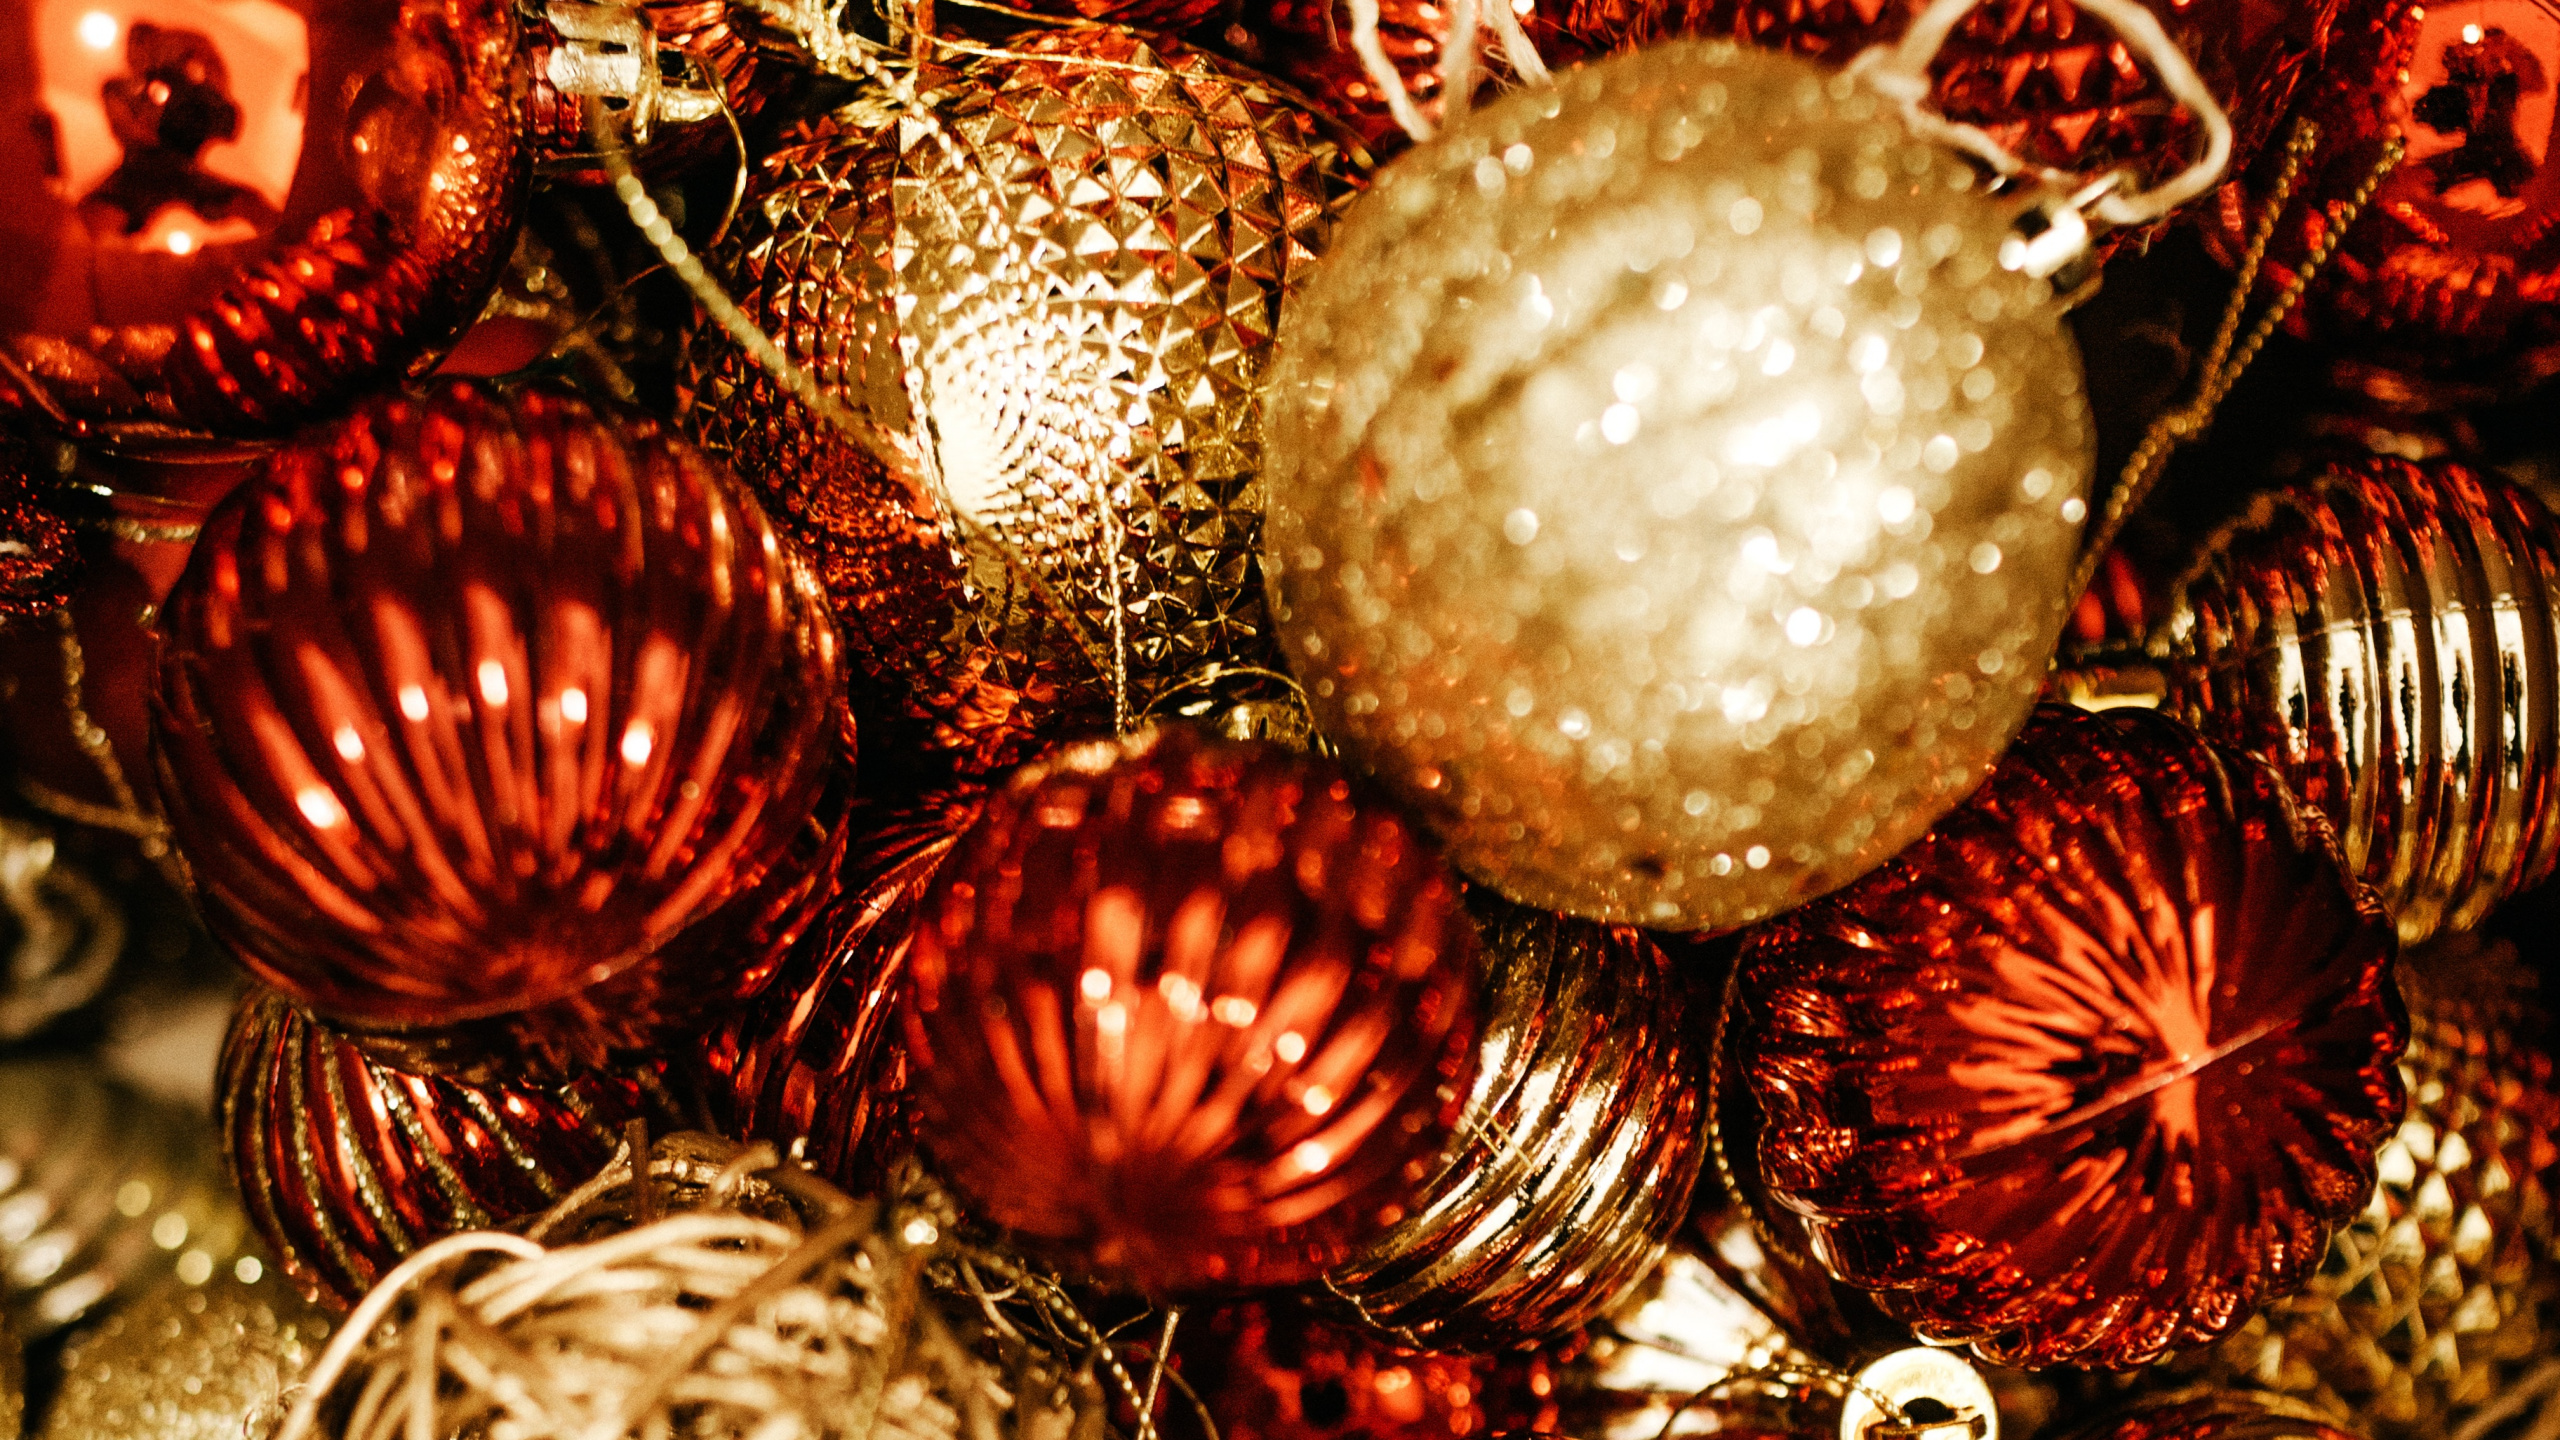 圣诞节那天, 圣诞树, 圣诞节的装饰品, 装饰品, 圣诞前夕 壁纸 2560x1440 允许